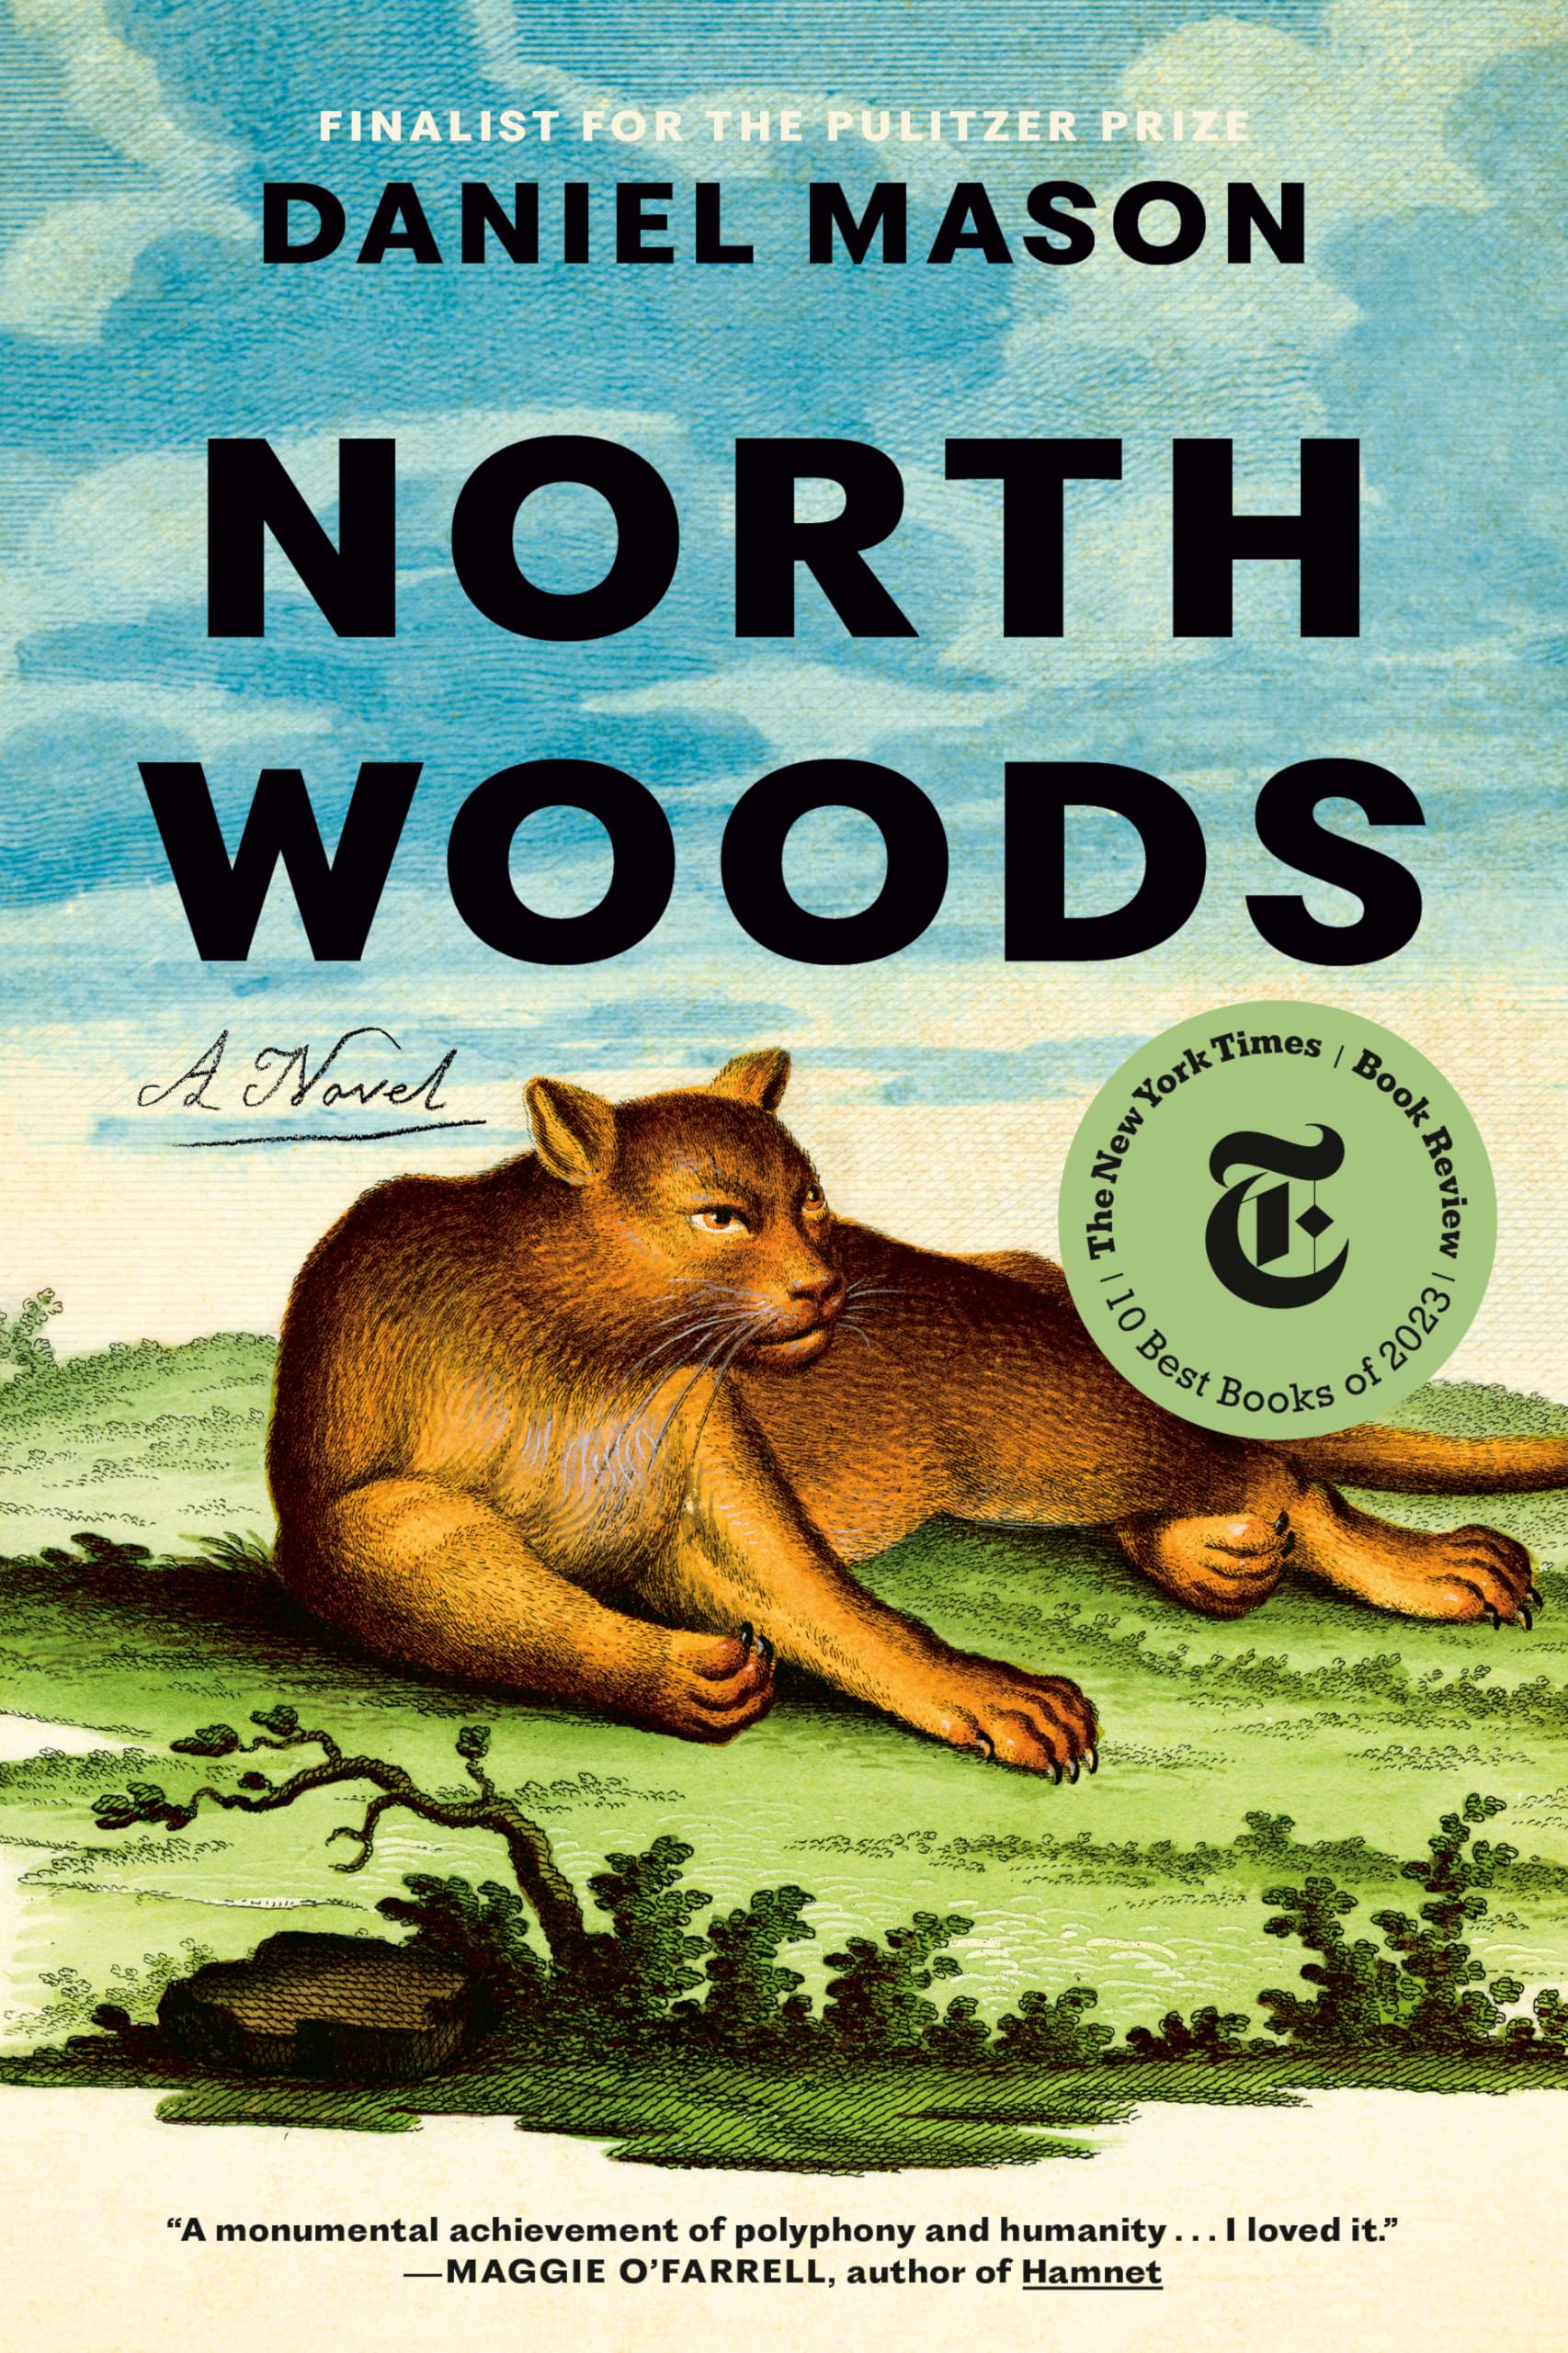 North Woods: A Novel (eBook) by Daniel Mason $1.99